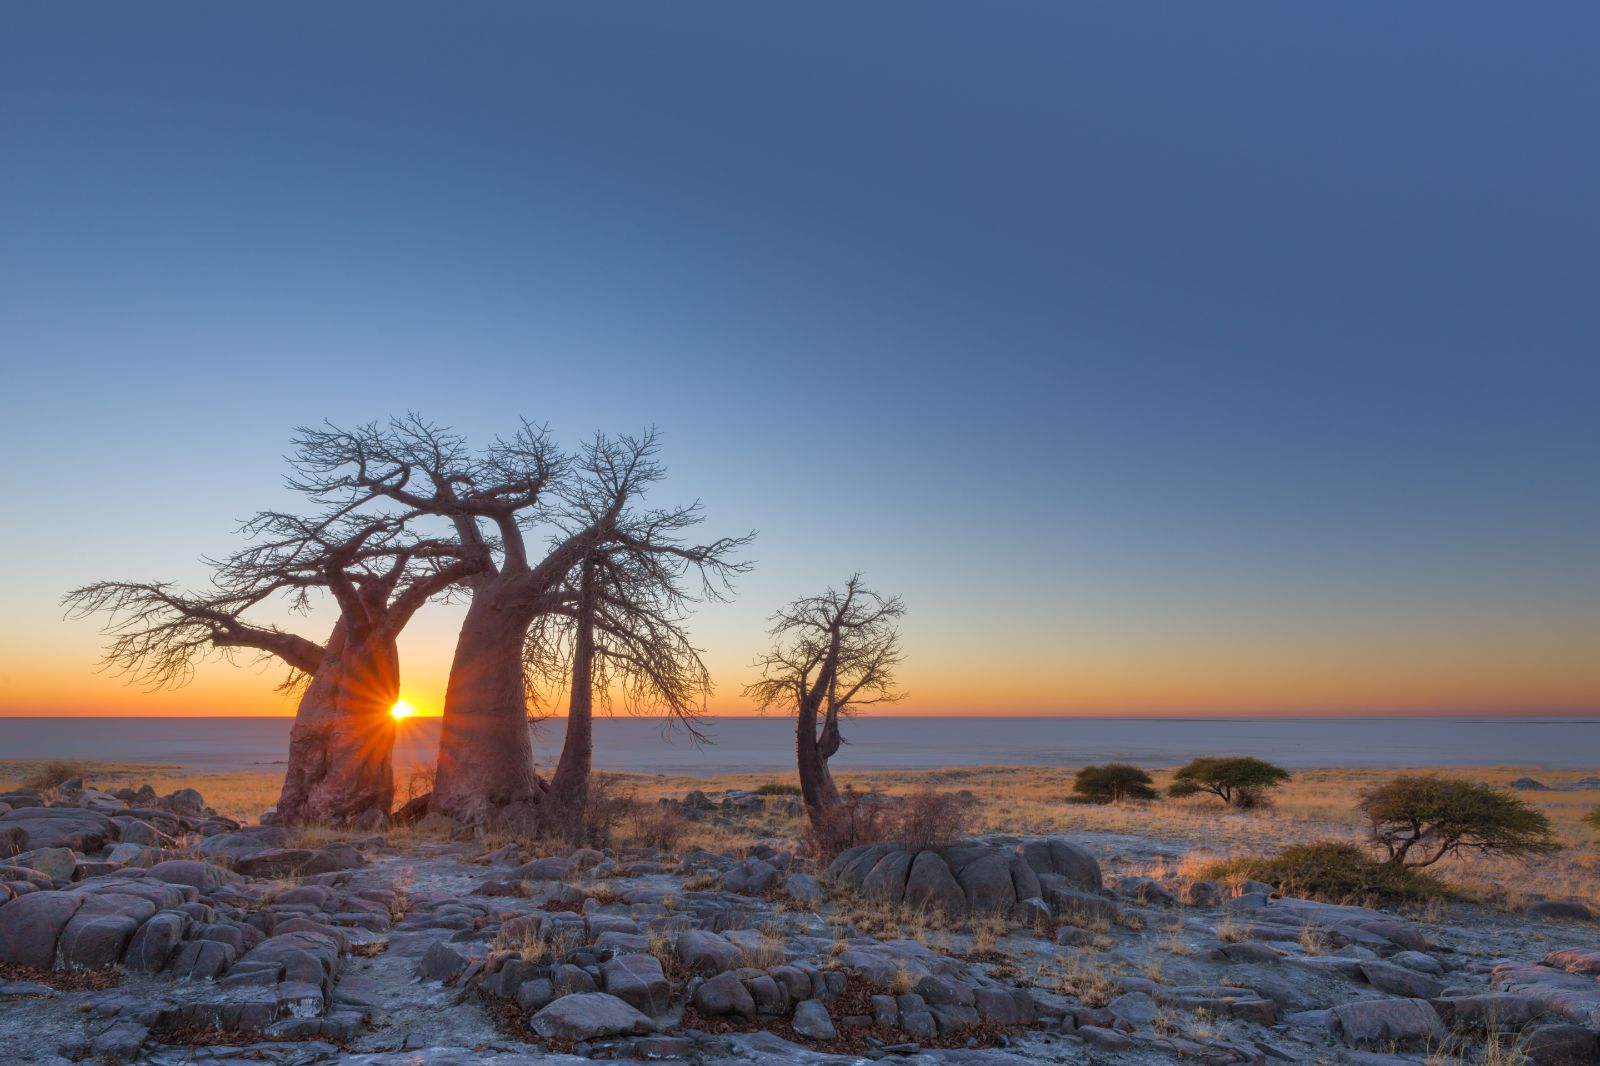 Baobab trees in Botswana's Makgadikgadi Salt Pans at sunset